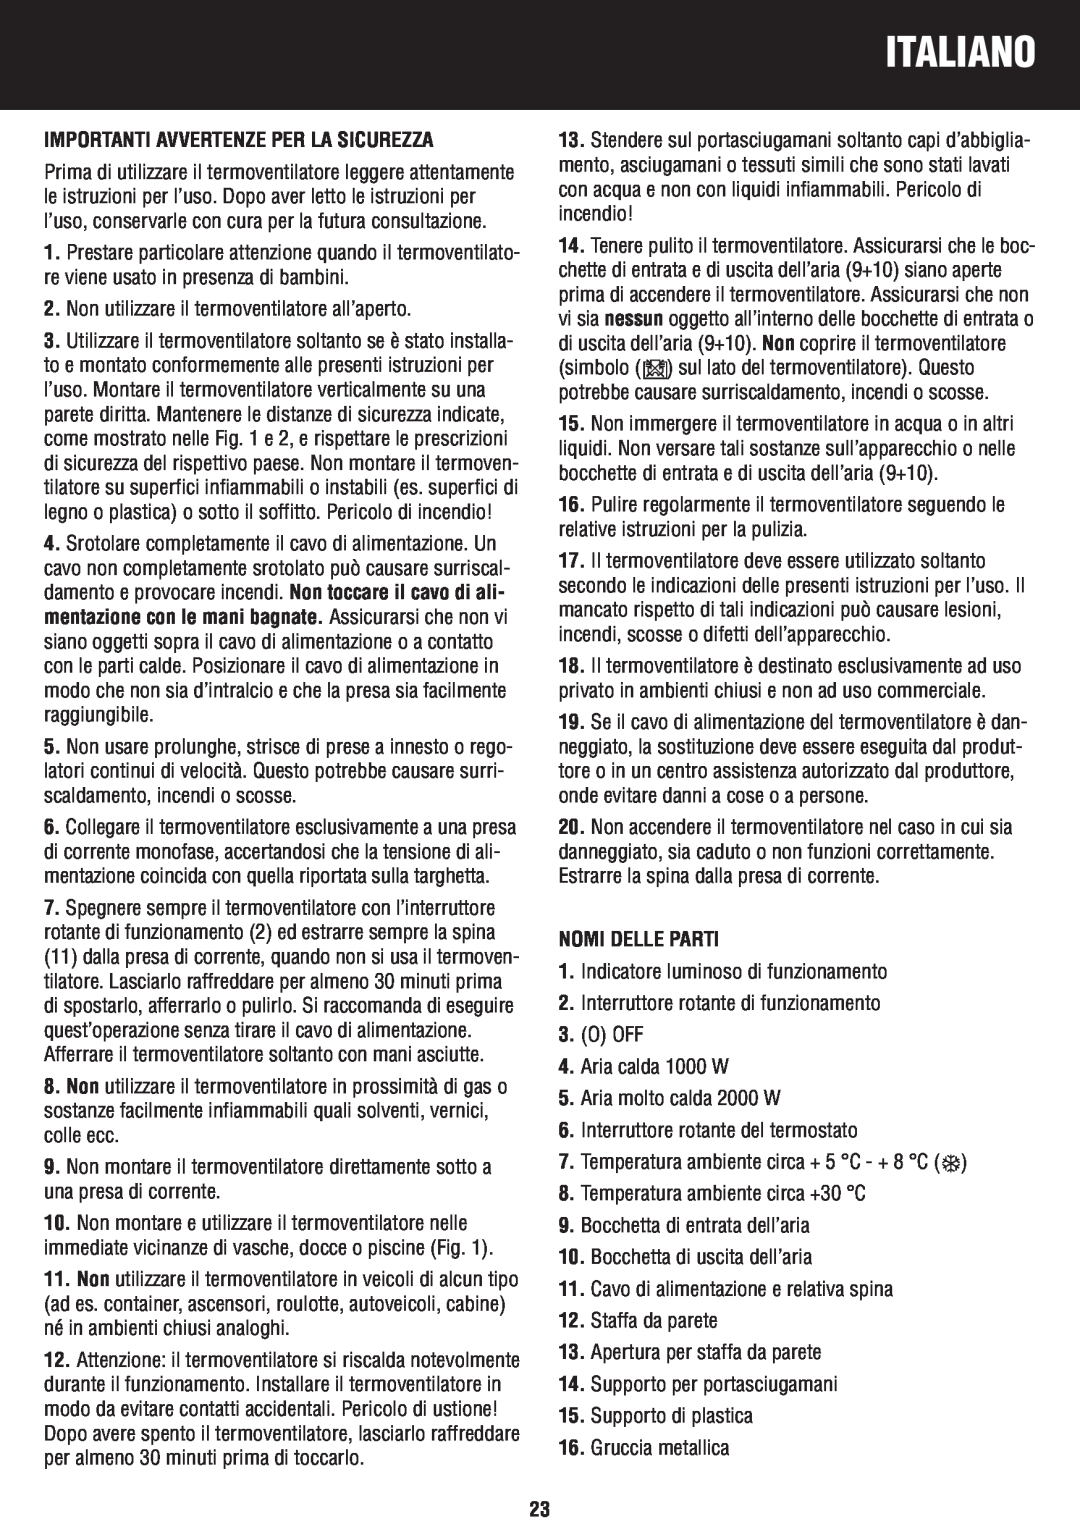 Honeywell BH-777FTE manual do utilizador Italiano, Importanti Avvertenze Per La Sicurezza, Nomi Delle Parti 